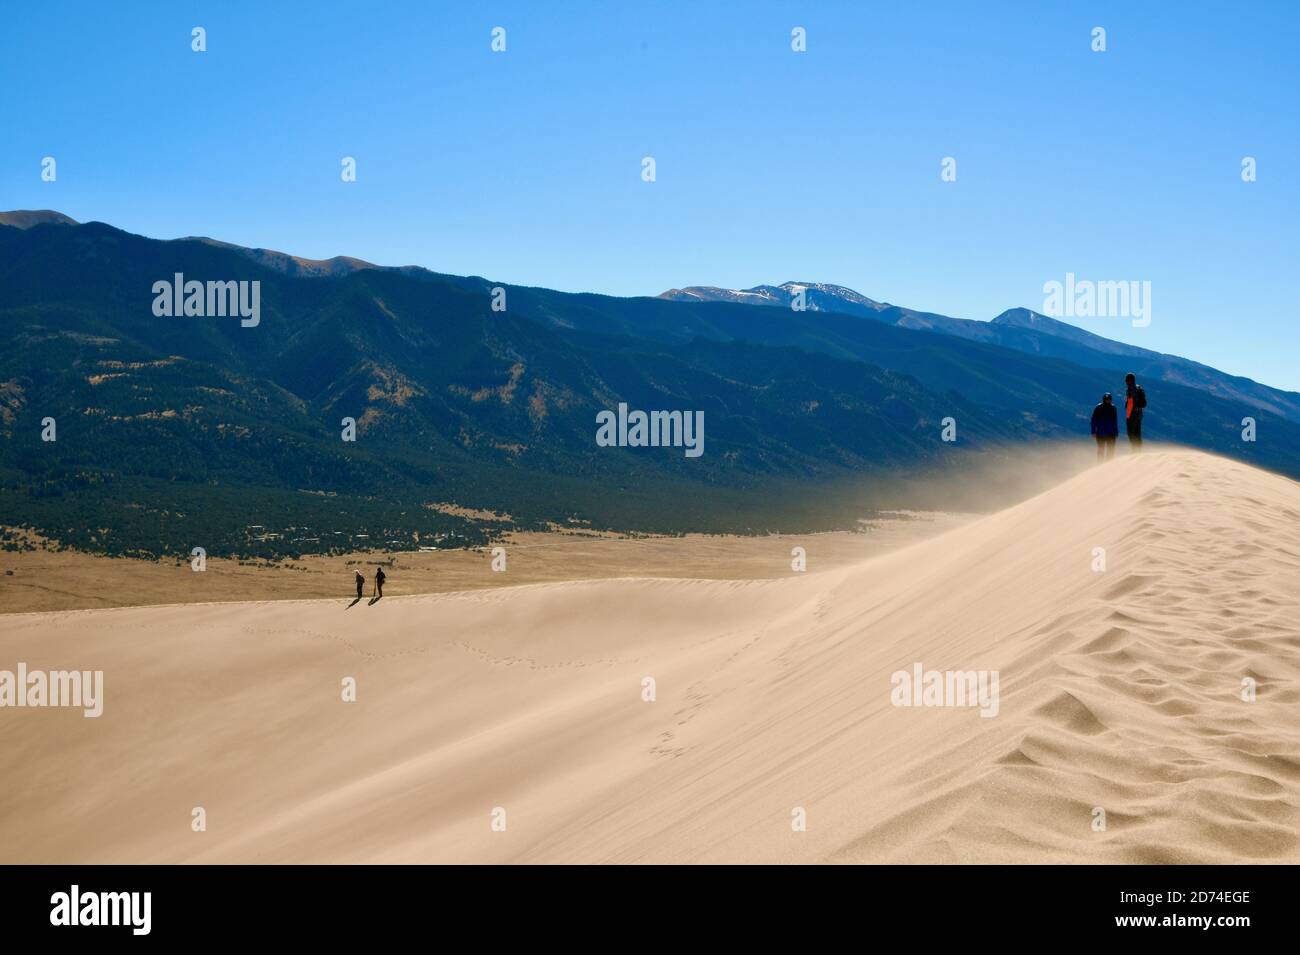 Wandern und Sandboarding in den höchsten Sanddünen Nordamerikas. Great Sand Dunes National Park. Sangre de Cristo Mountains in Colorado, USA Stockfoto